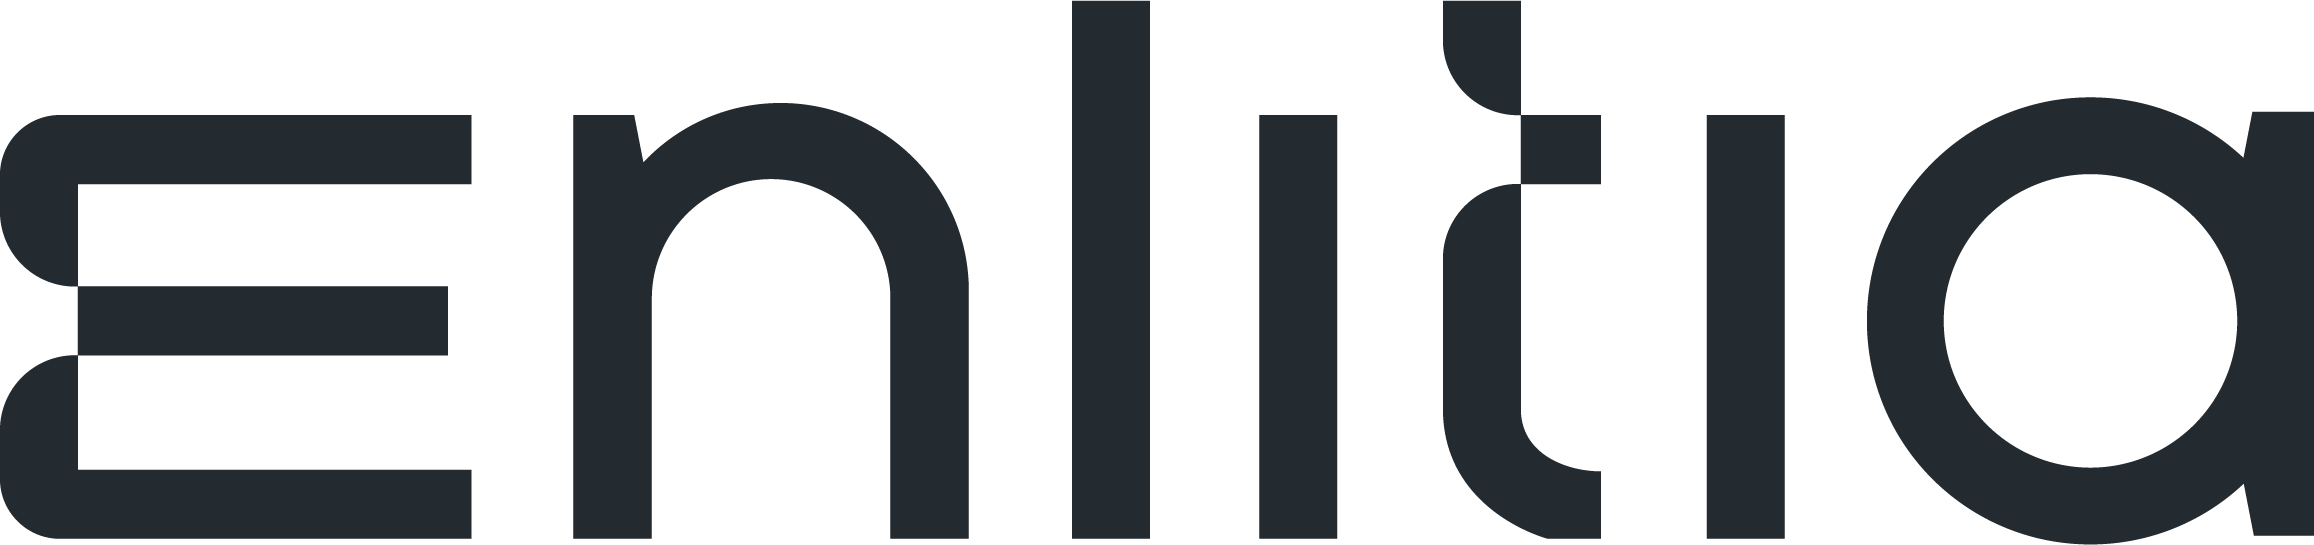 Enlitia_logo